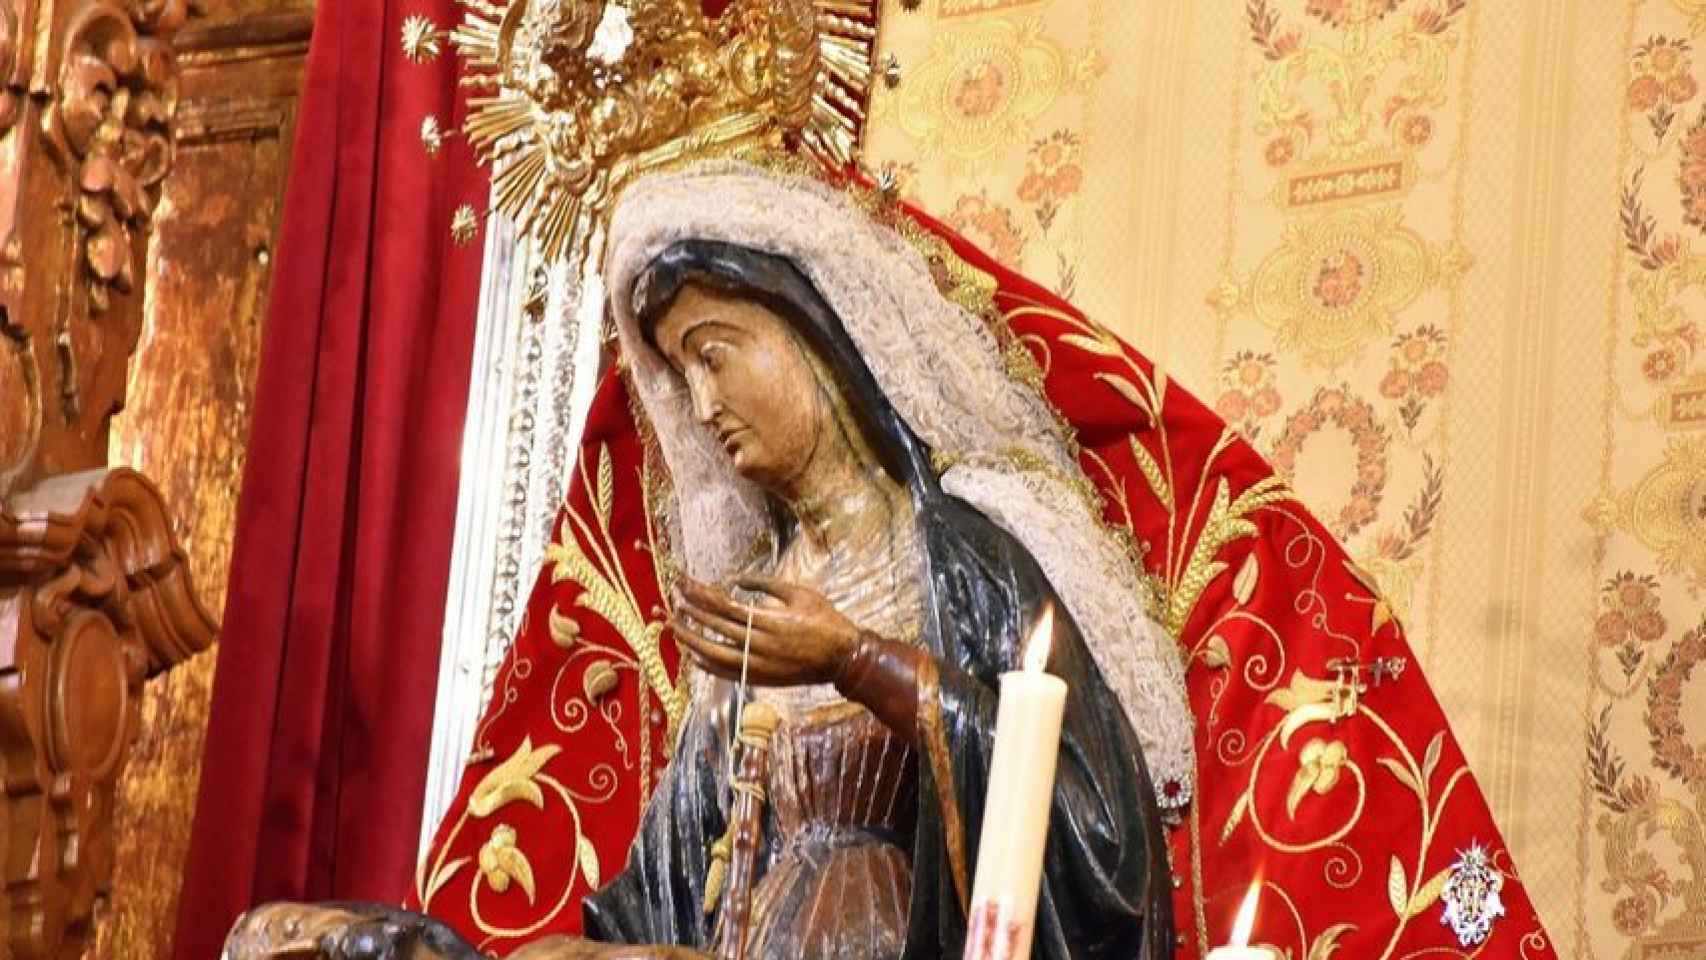 La Virgen con el manto rojo que luce mientras está en el altar de la iglesia.